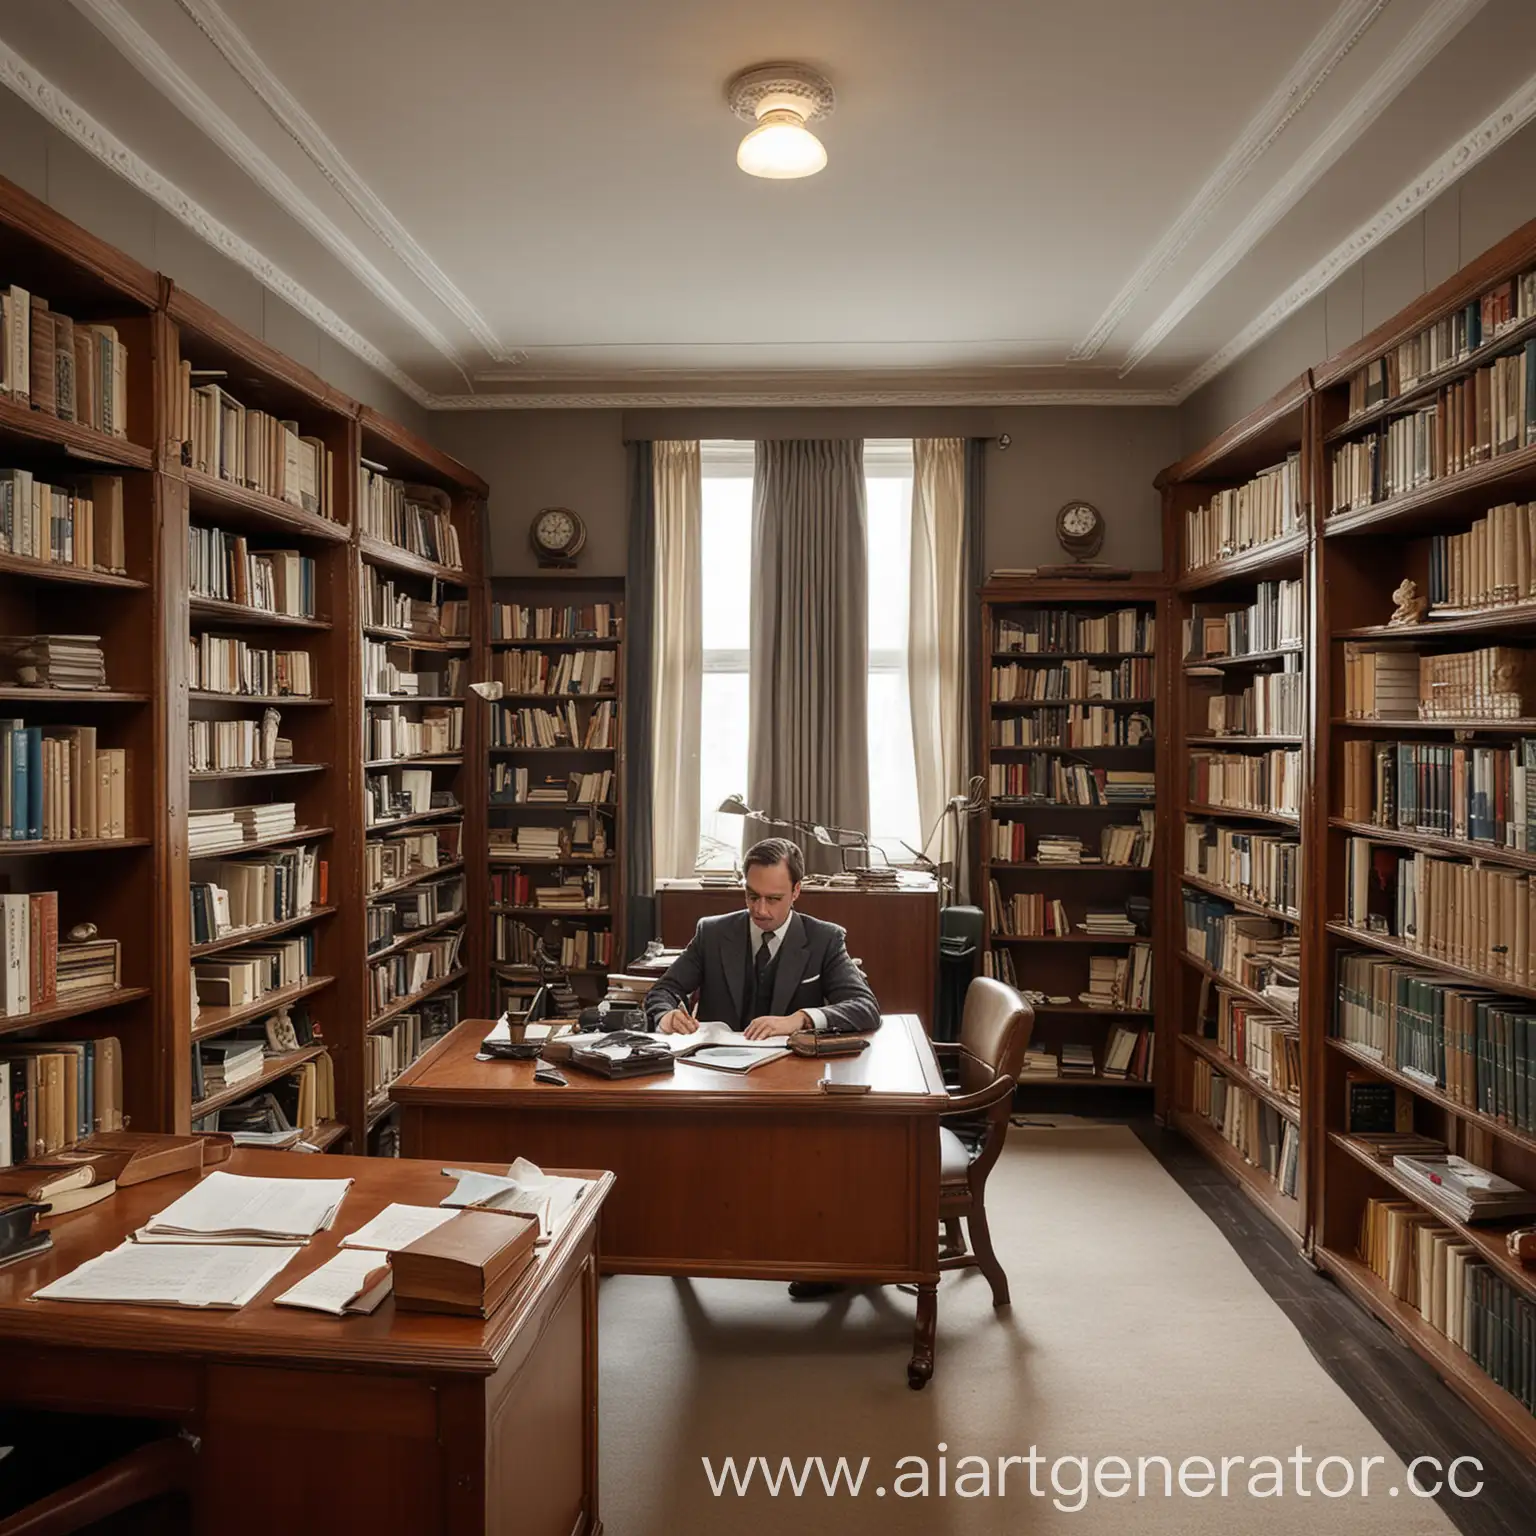 кабинет важного человека в стиле 1930 годов, в кабинете 2 шкафа с книгами, в конце кабинета рабочее место где сидит мужчина лет 40 и пишет на листе,обзор кабинета  с снизу вперёд